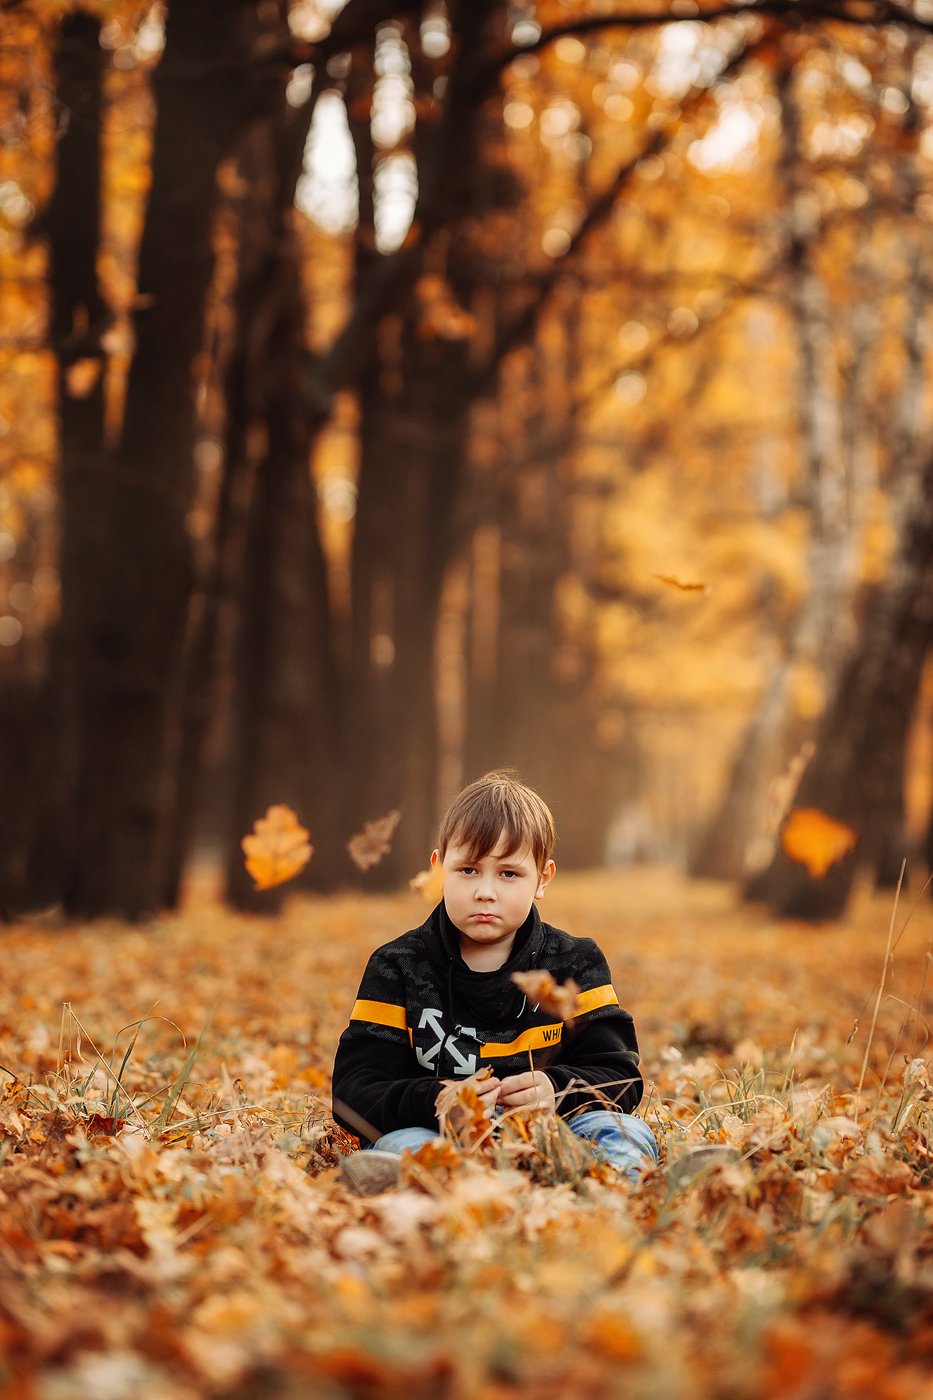 мальчик, ребенок, грусть, печаль, осень, оранжевый, желтый, парк, перспектива, листья, дуб, Ангелина Косова